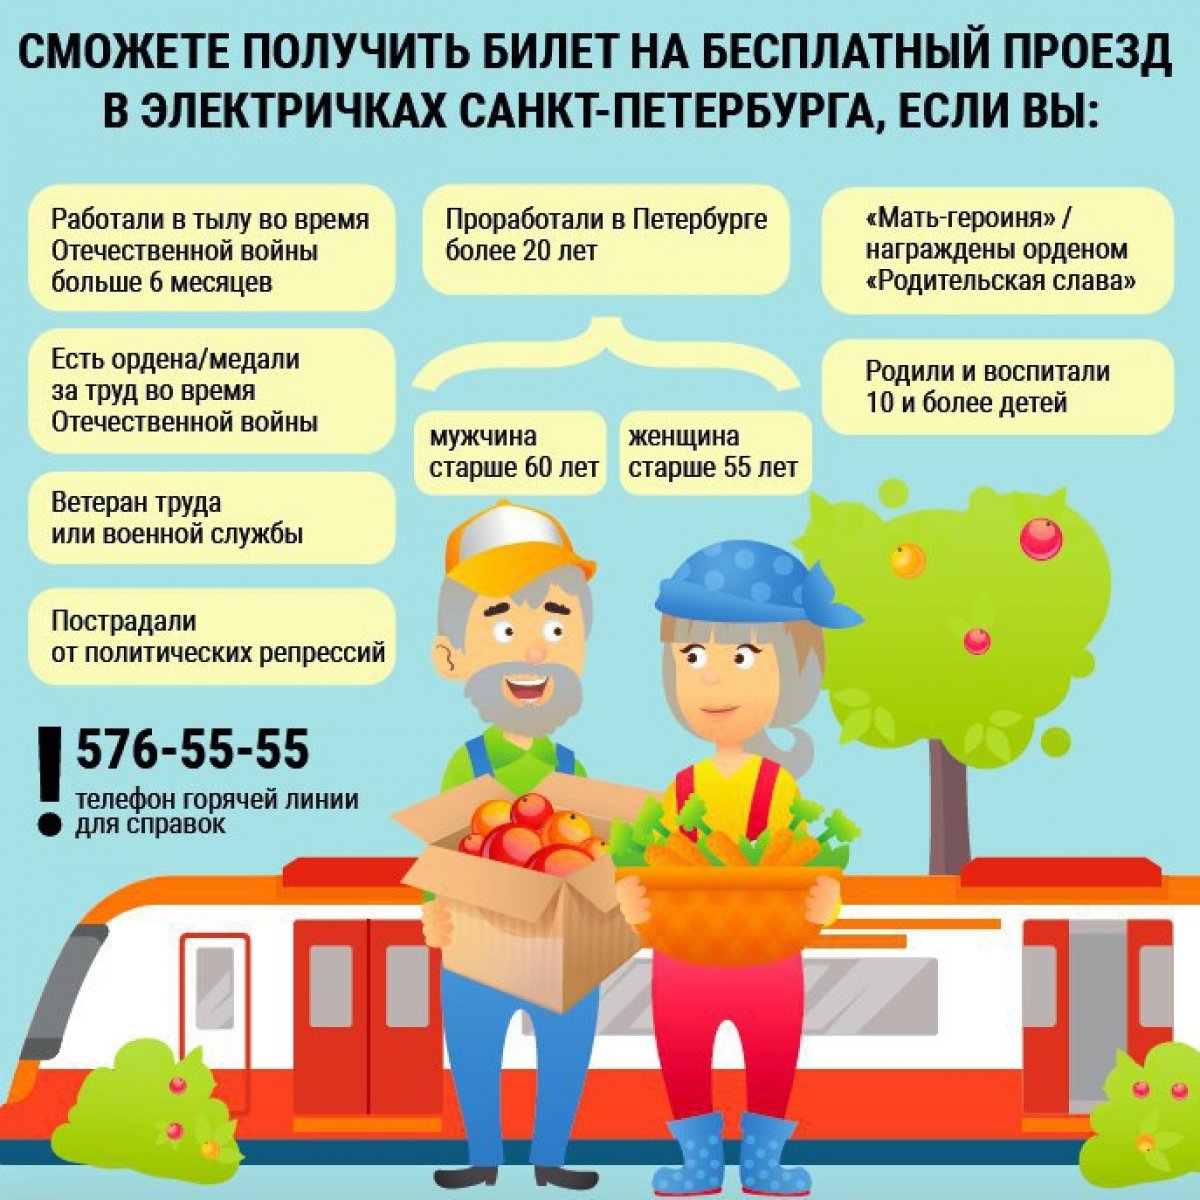 С 27 апреля 2019 начинает действовать бесплатный круглогодичный проезд на пригородных поездах для отдельных категорий пассажиров 👉🏻 gov.spb.ru/gov/otrasl/c_transport/news/163892/